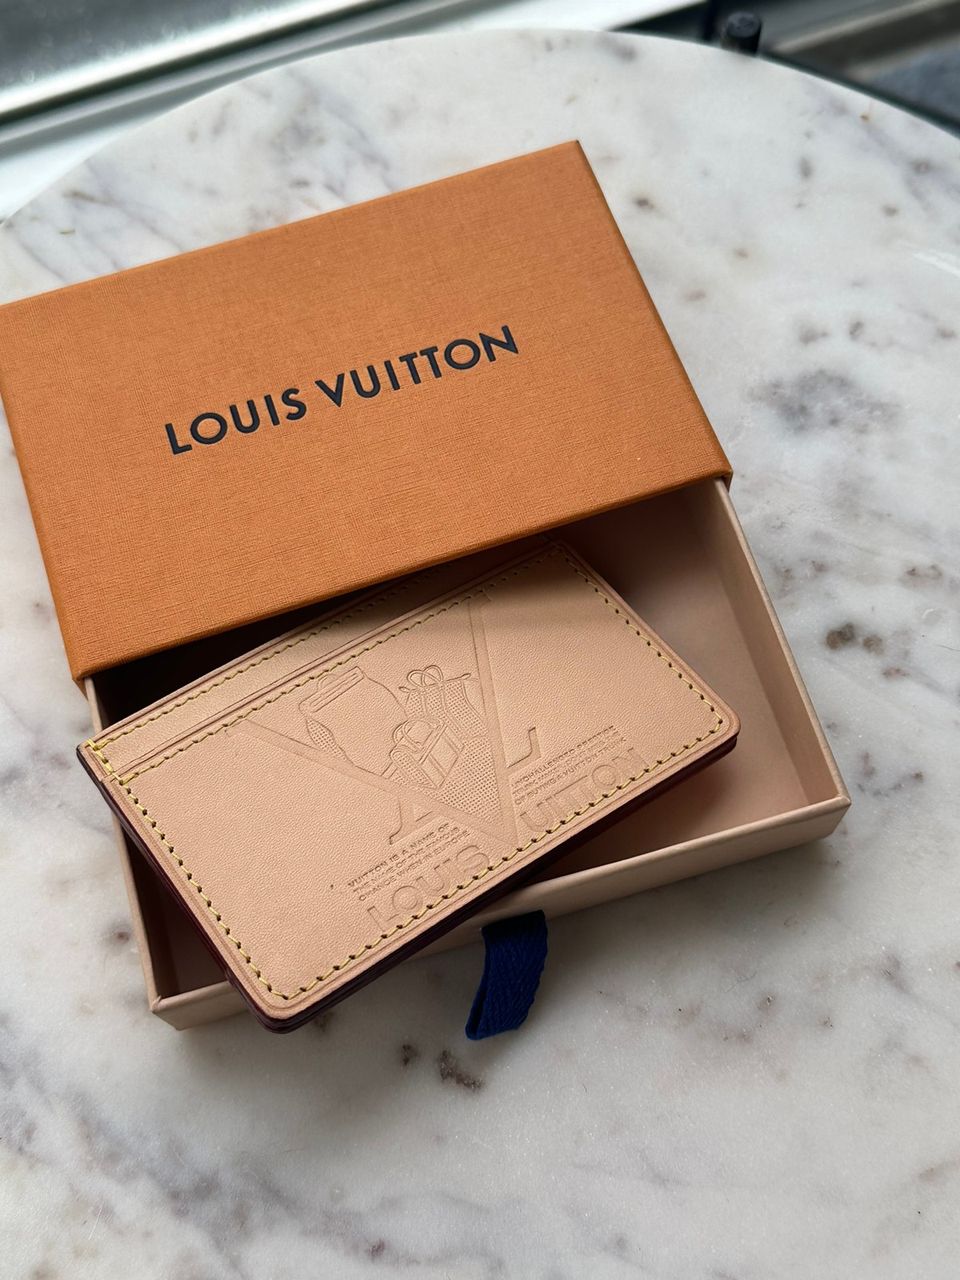 LV Louis Vuitton card holder